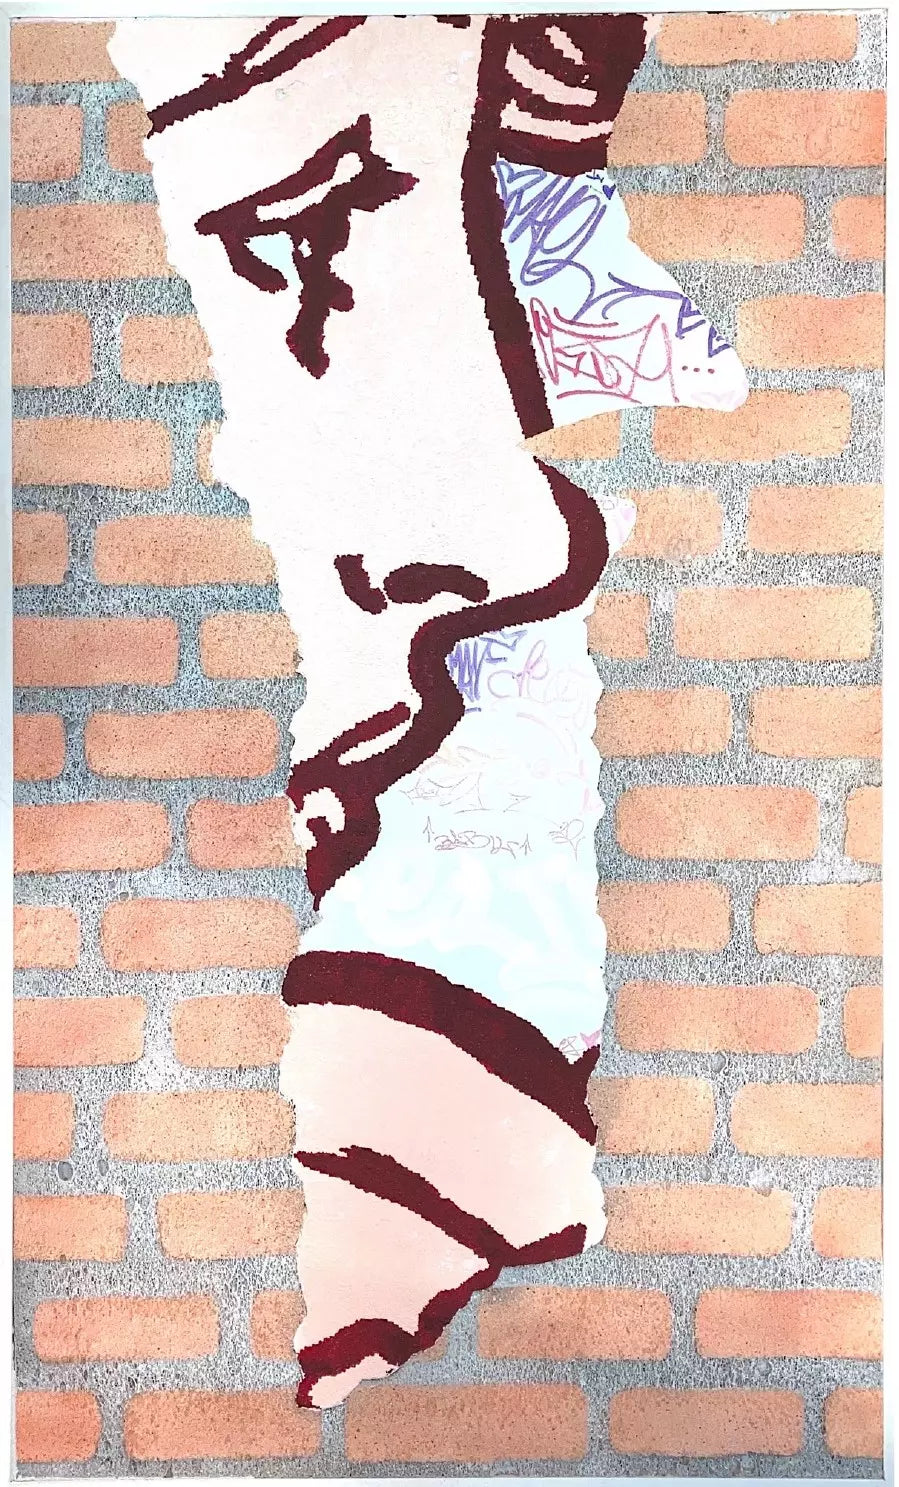 Spray Culturae Lost Wall di Shife. Opera unica acrilico e smalto su fusione acrilica di polistirene rappresentante un profilo di donna su un muro in mattoni | Cd Studio d'Arte